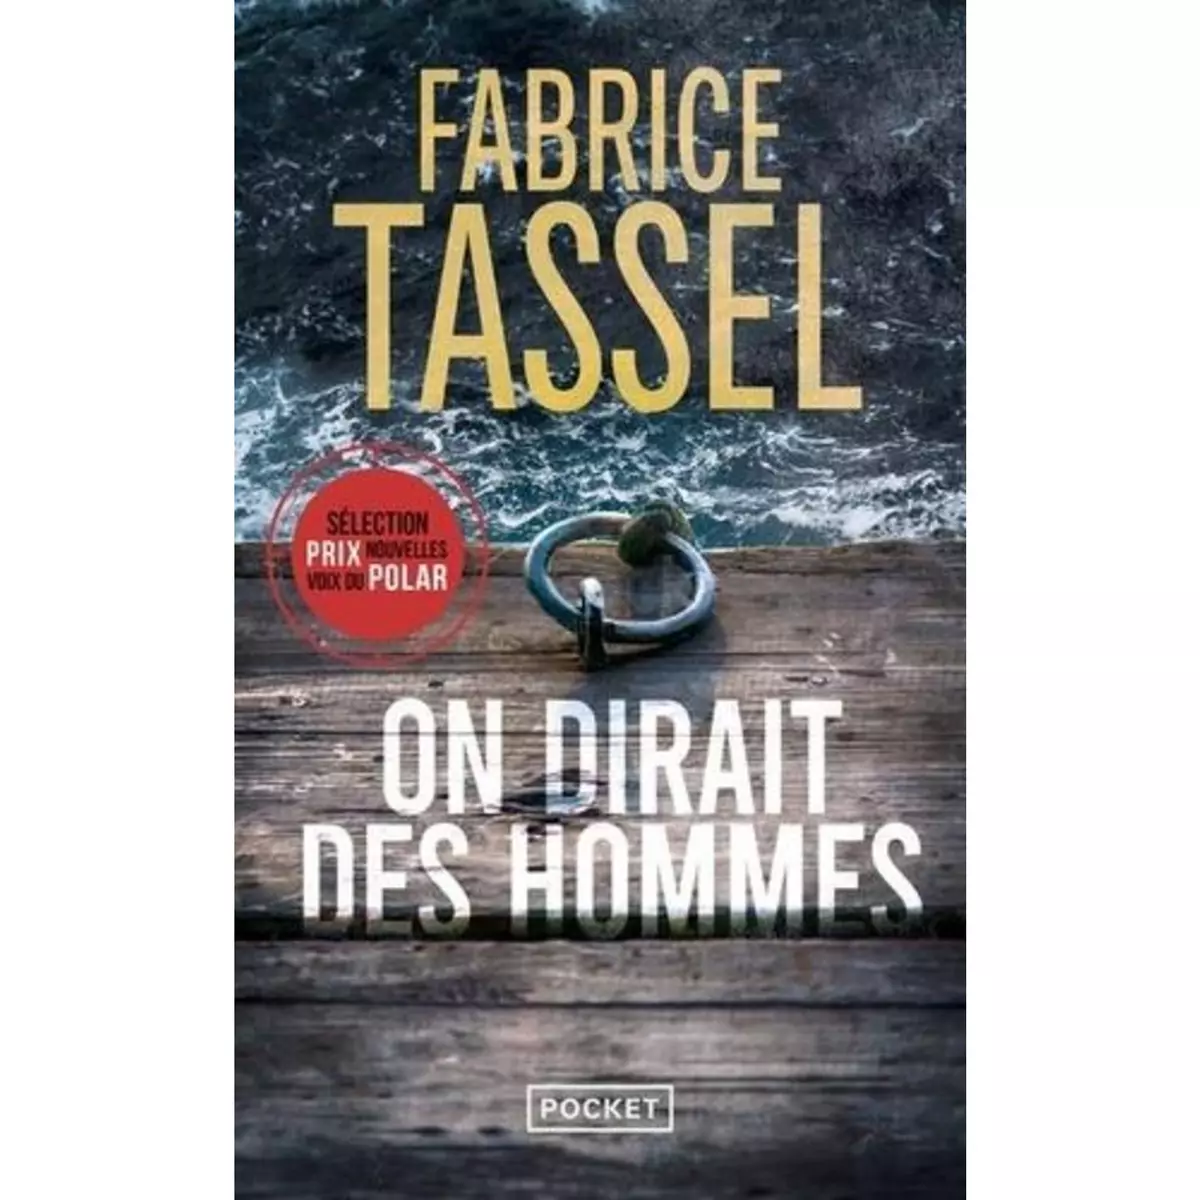  ON DIRAIT DES HOMMES, Tassel Fabrice